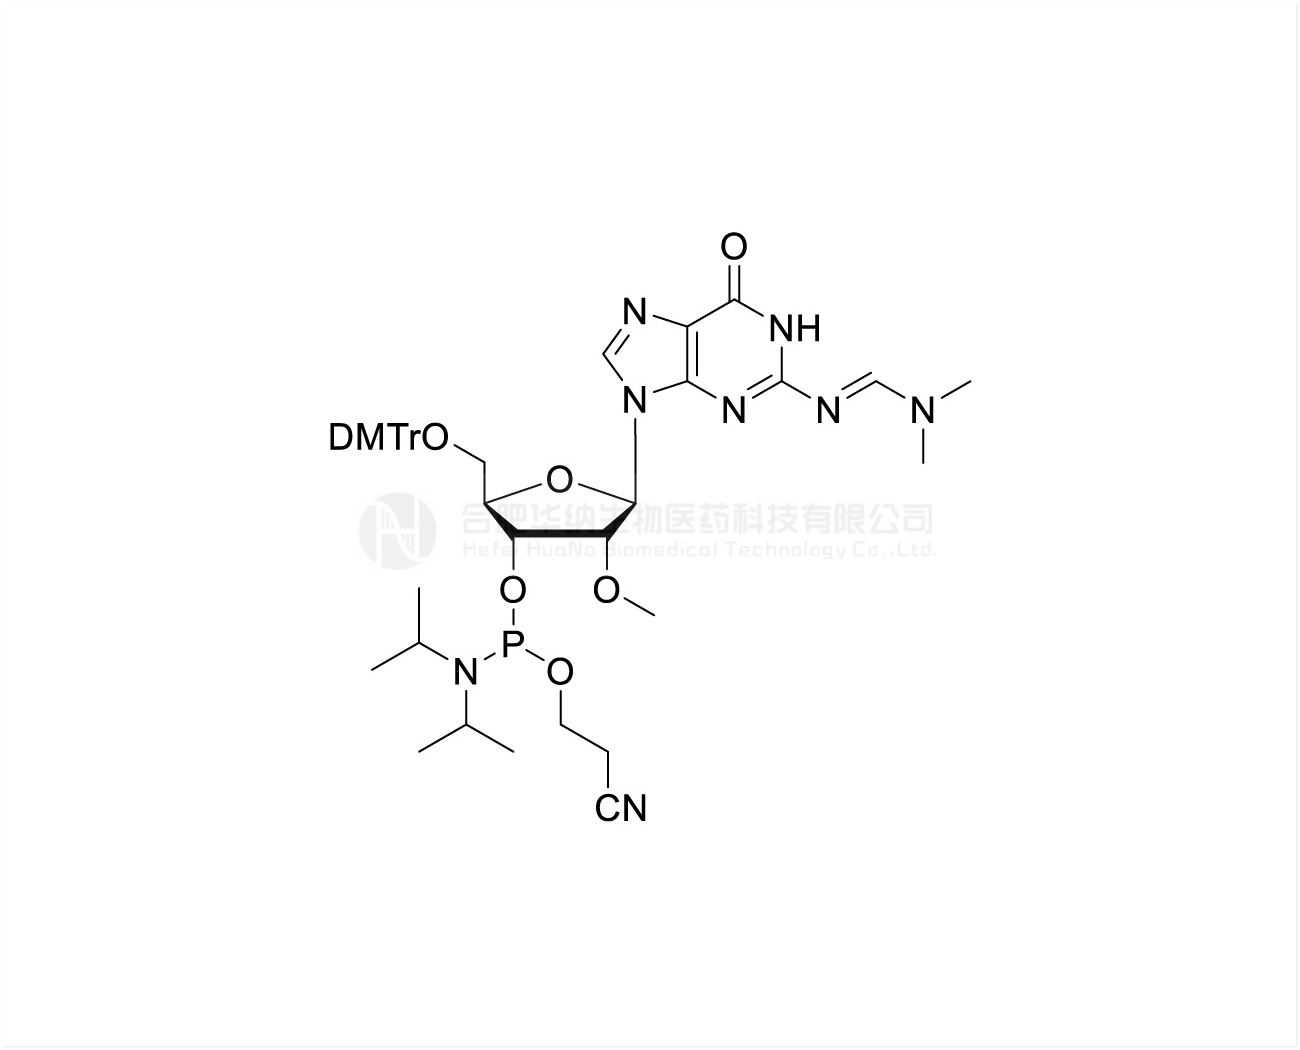 DMTr-2'-O-Me-rG(dmf)-3'-CE-Phosphoramidite